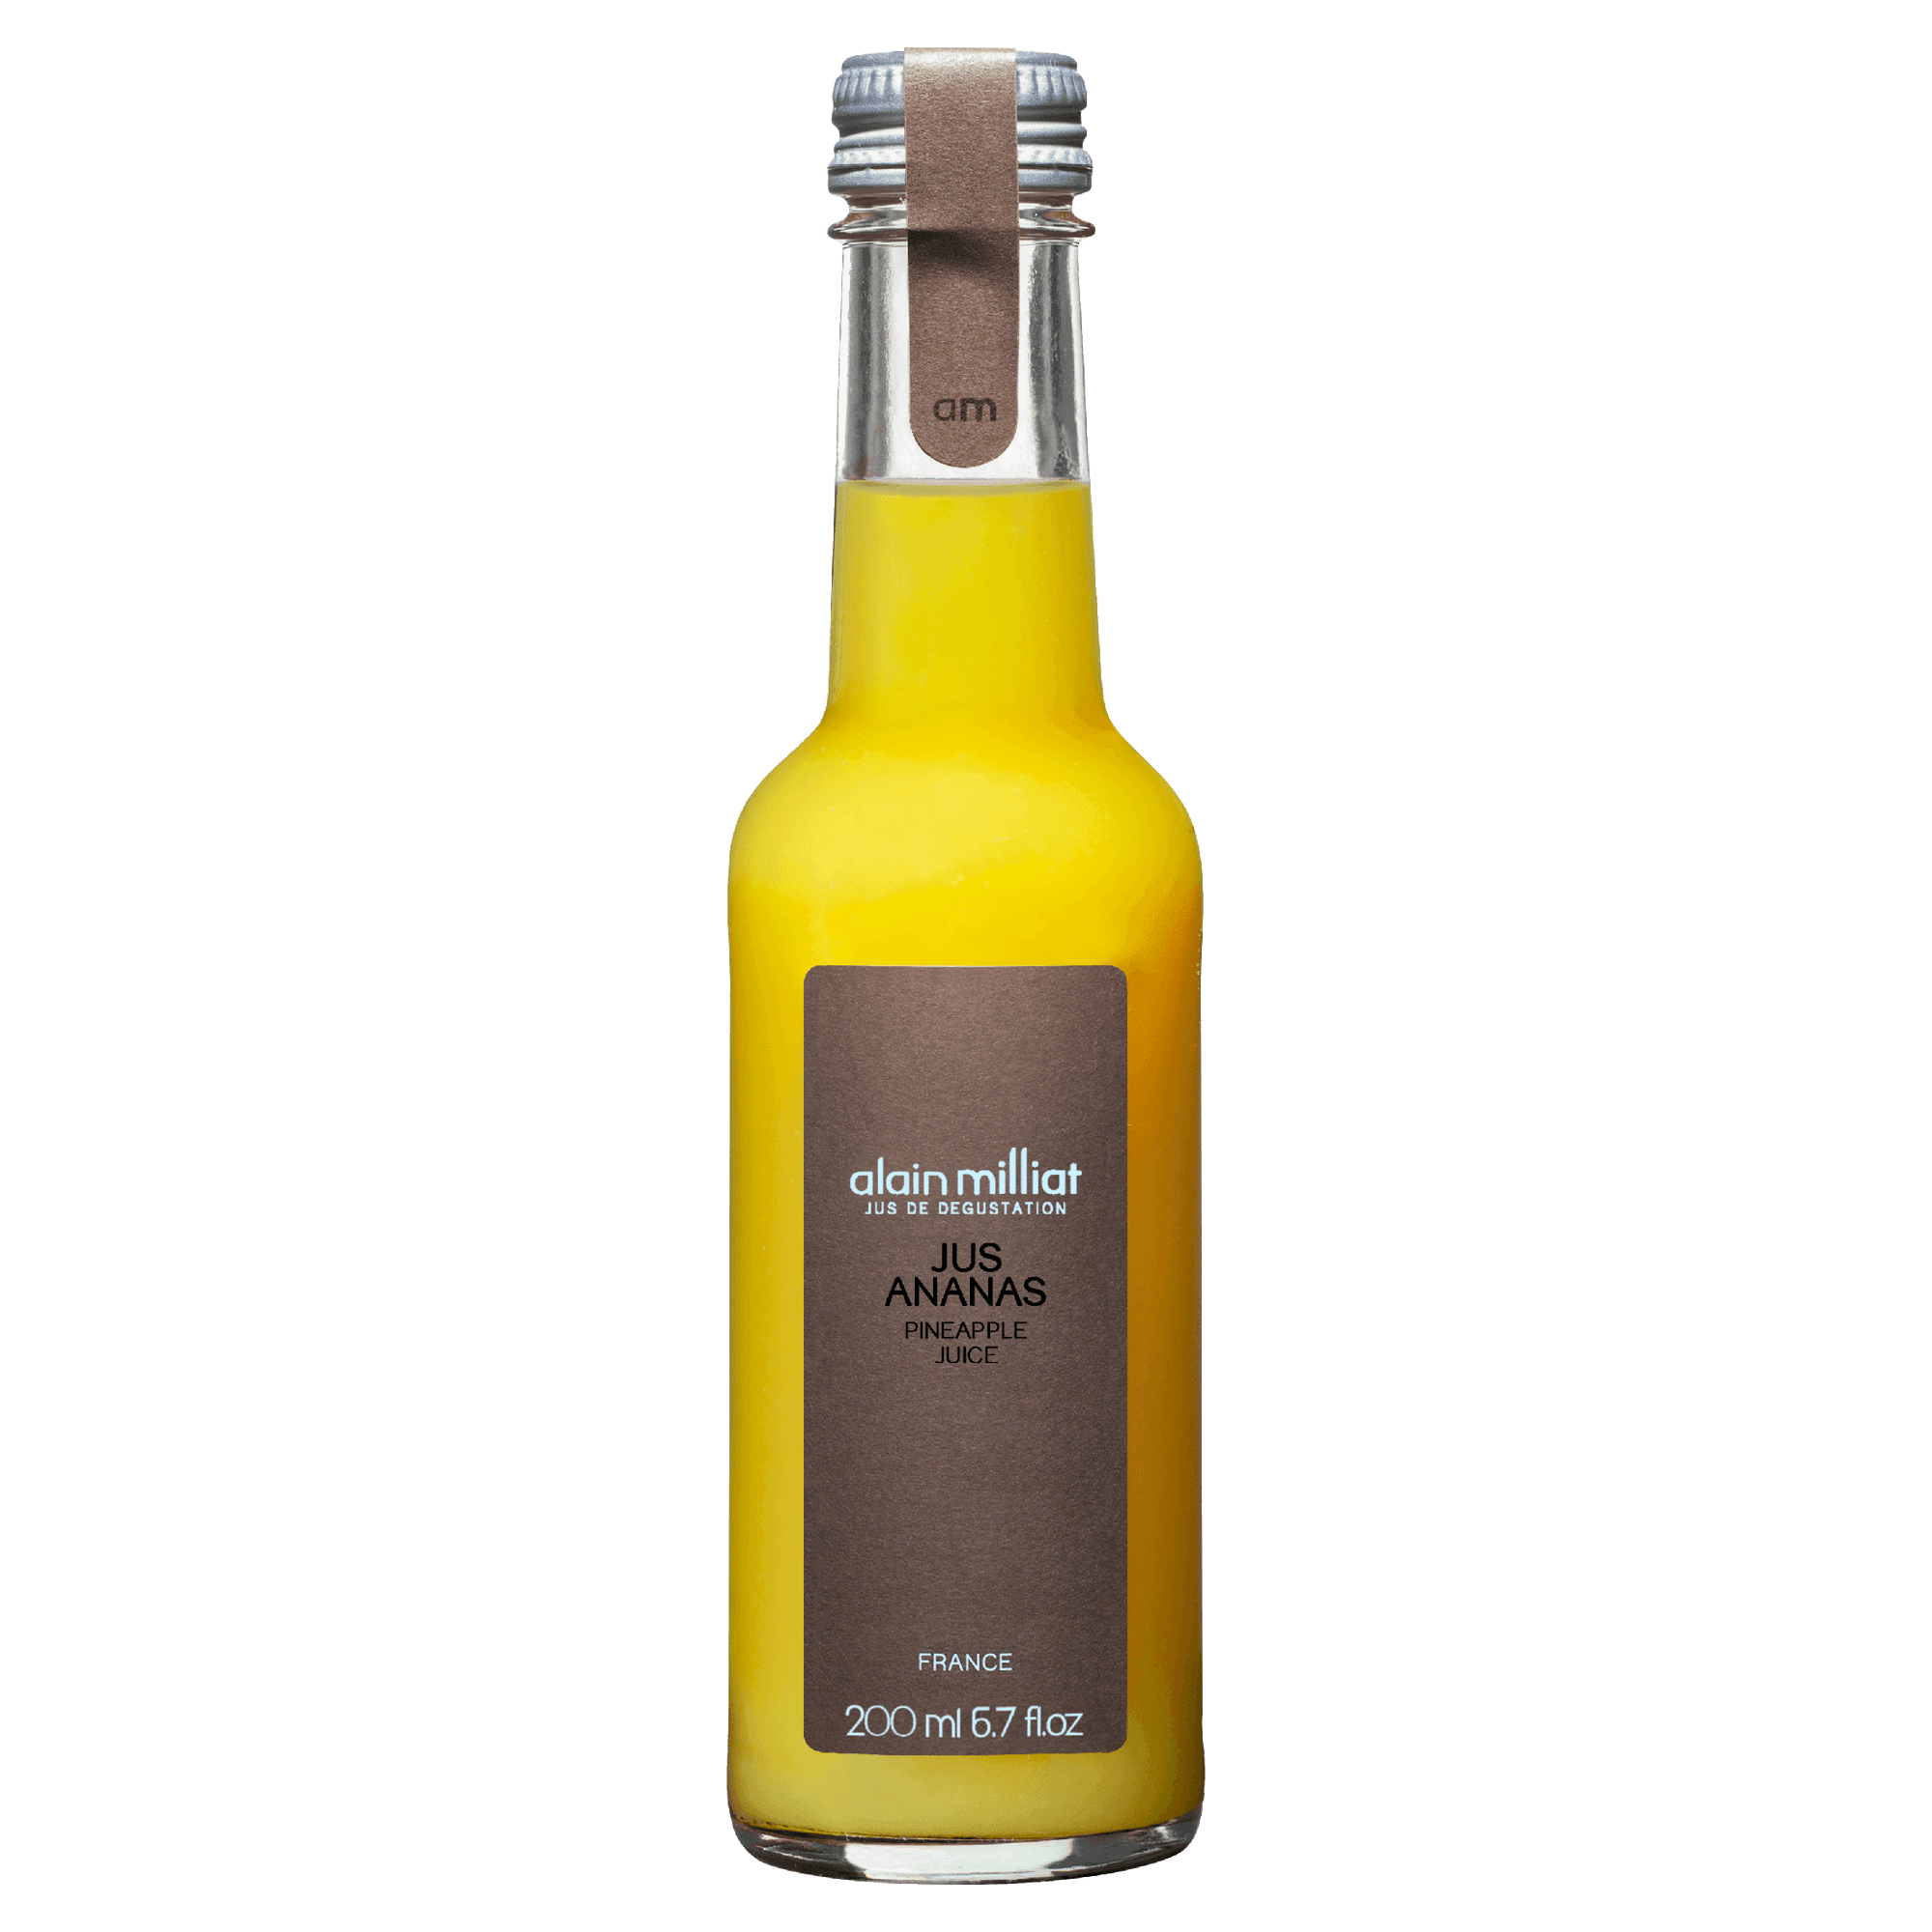 Pineapple Juice Small - Savory Gourmet